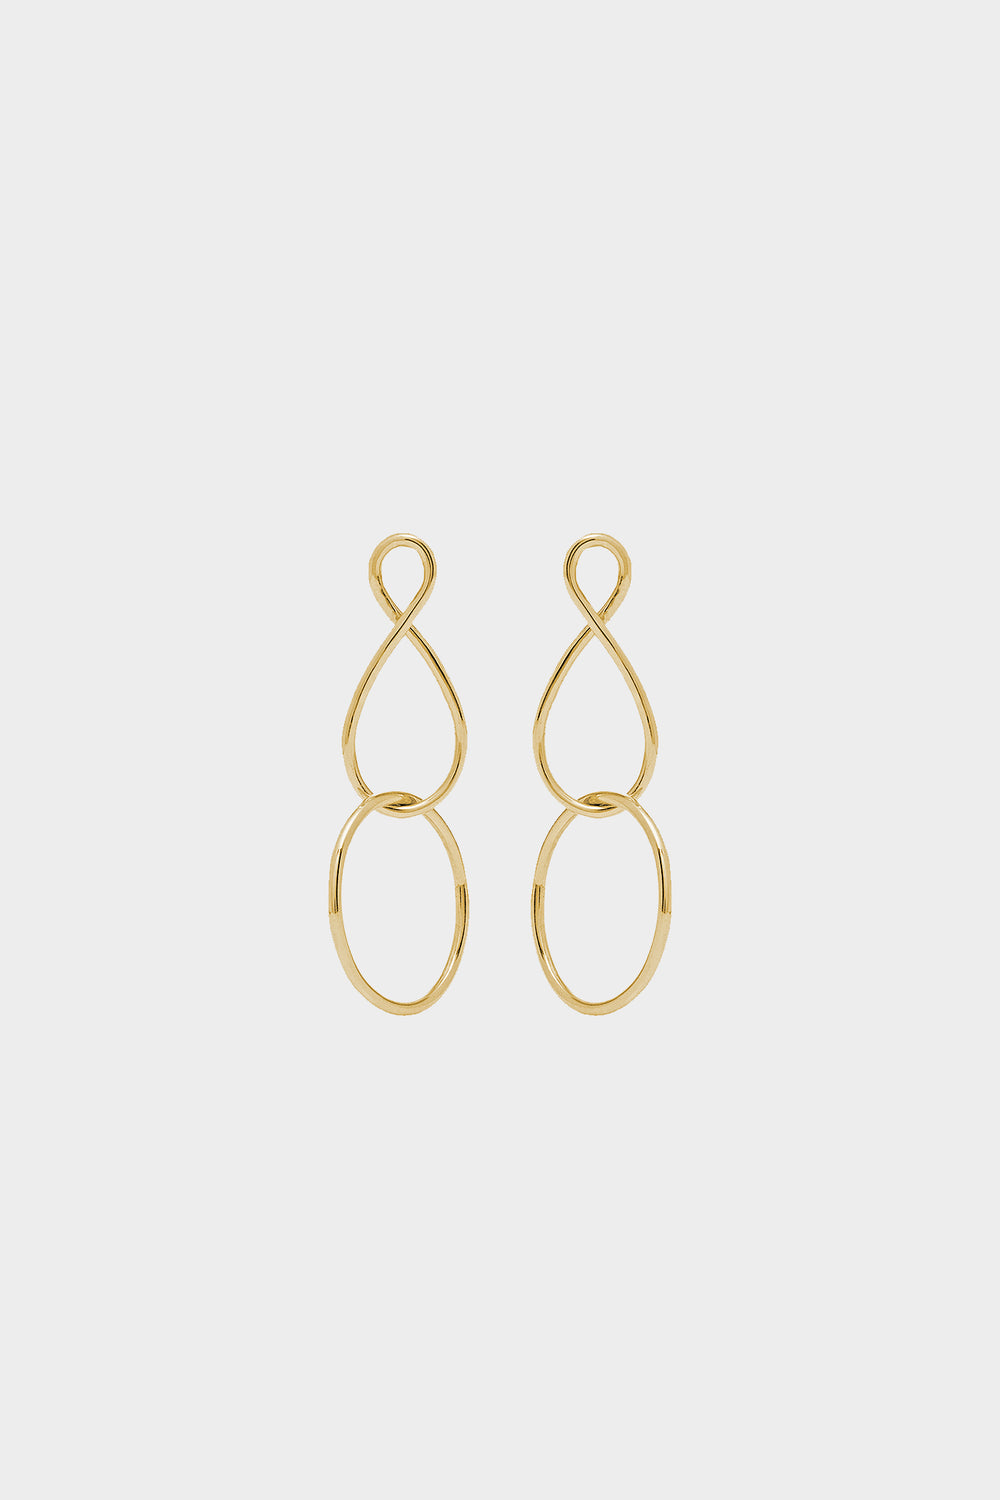 Mini Infinity Twist Earrings | 9K Yellow Gold